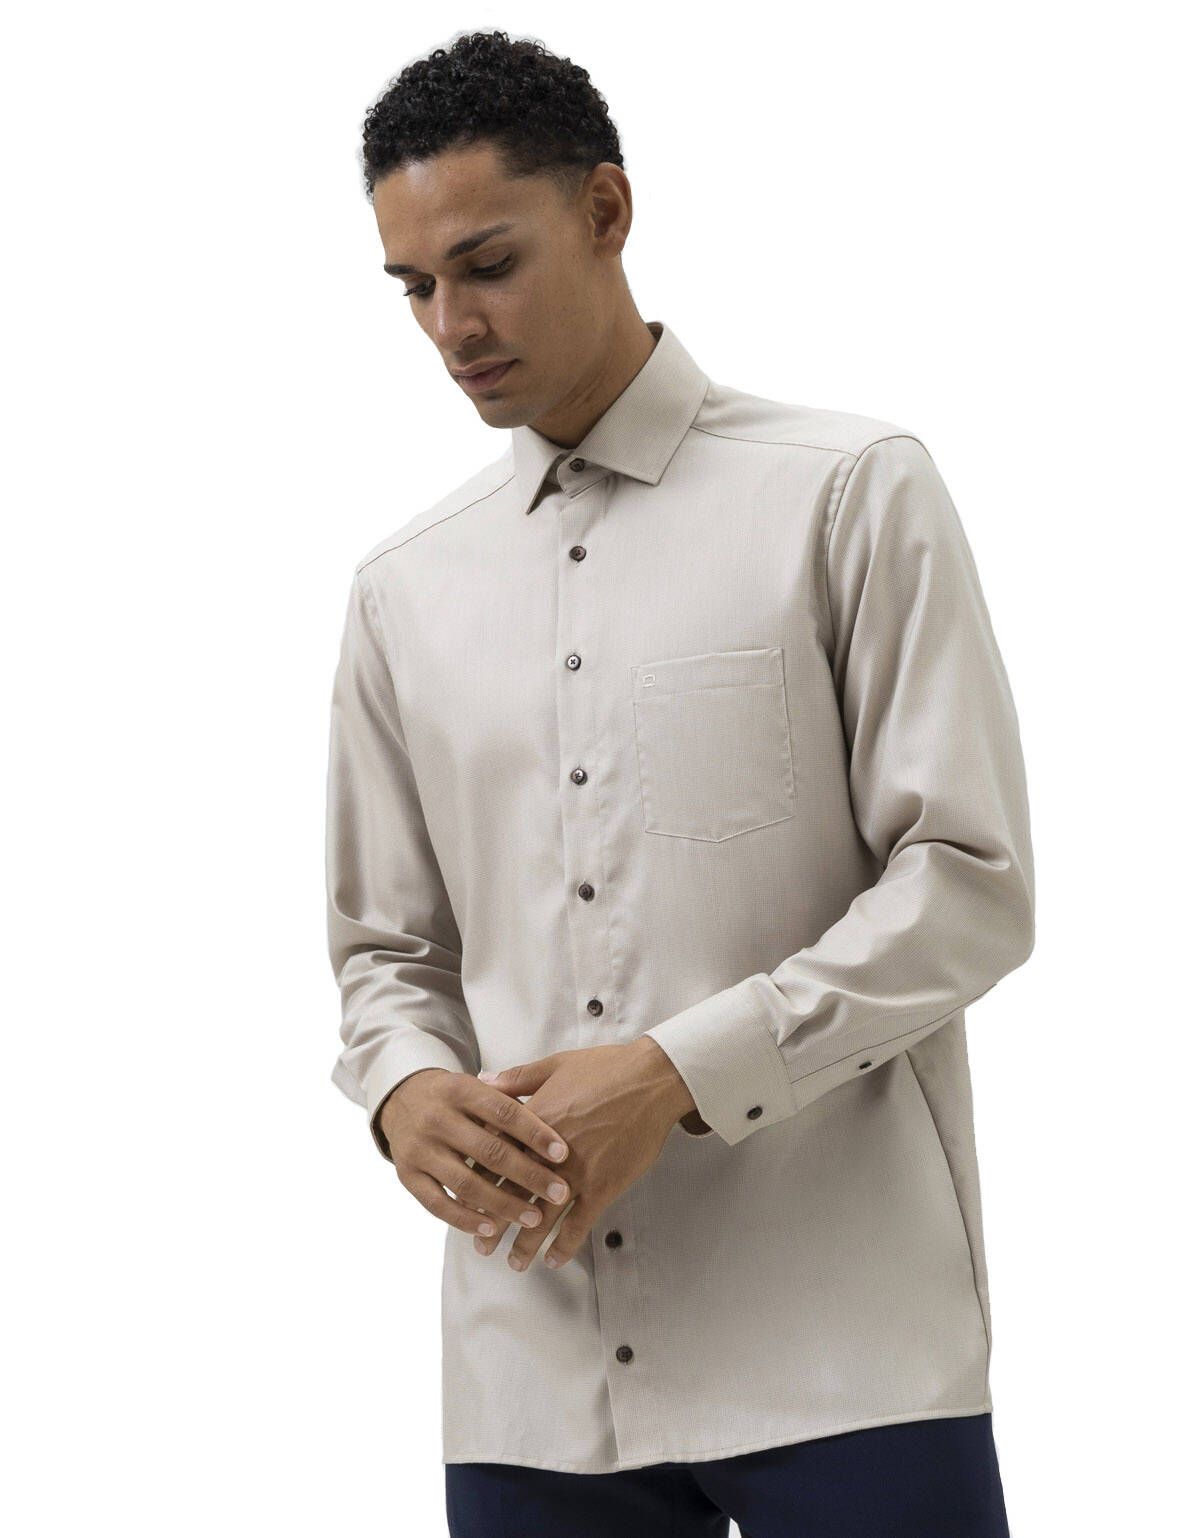 Рубашка бежевая мужская OLYMP Luxor, modern fit[БЕЖЕВЫЙ]